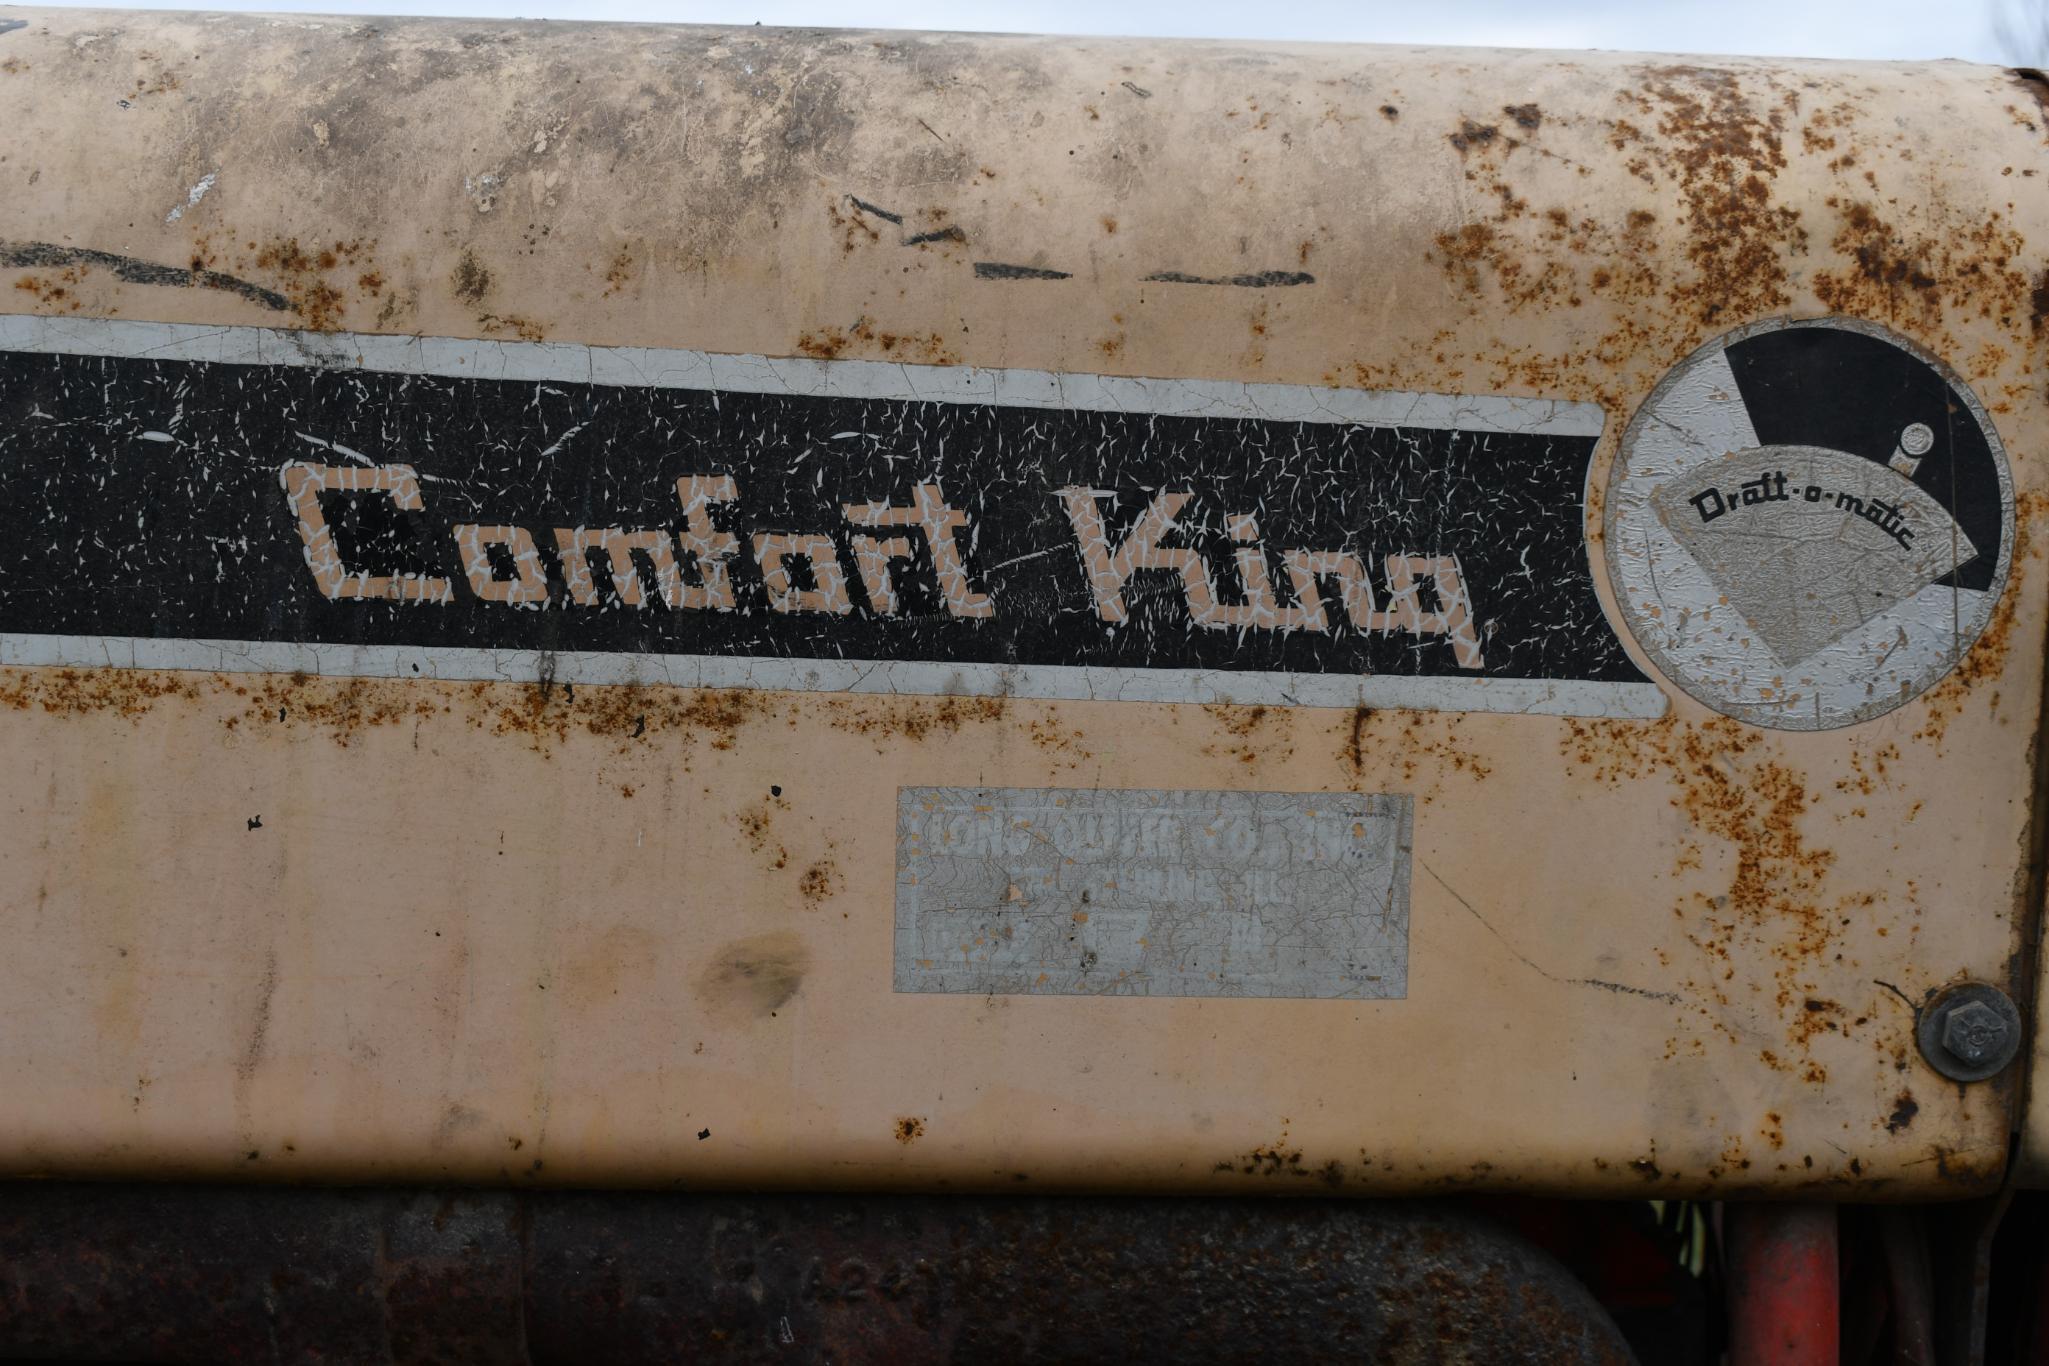 Case 930 Comfort King diesel tractor